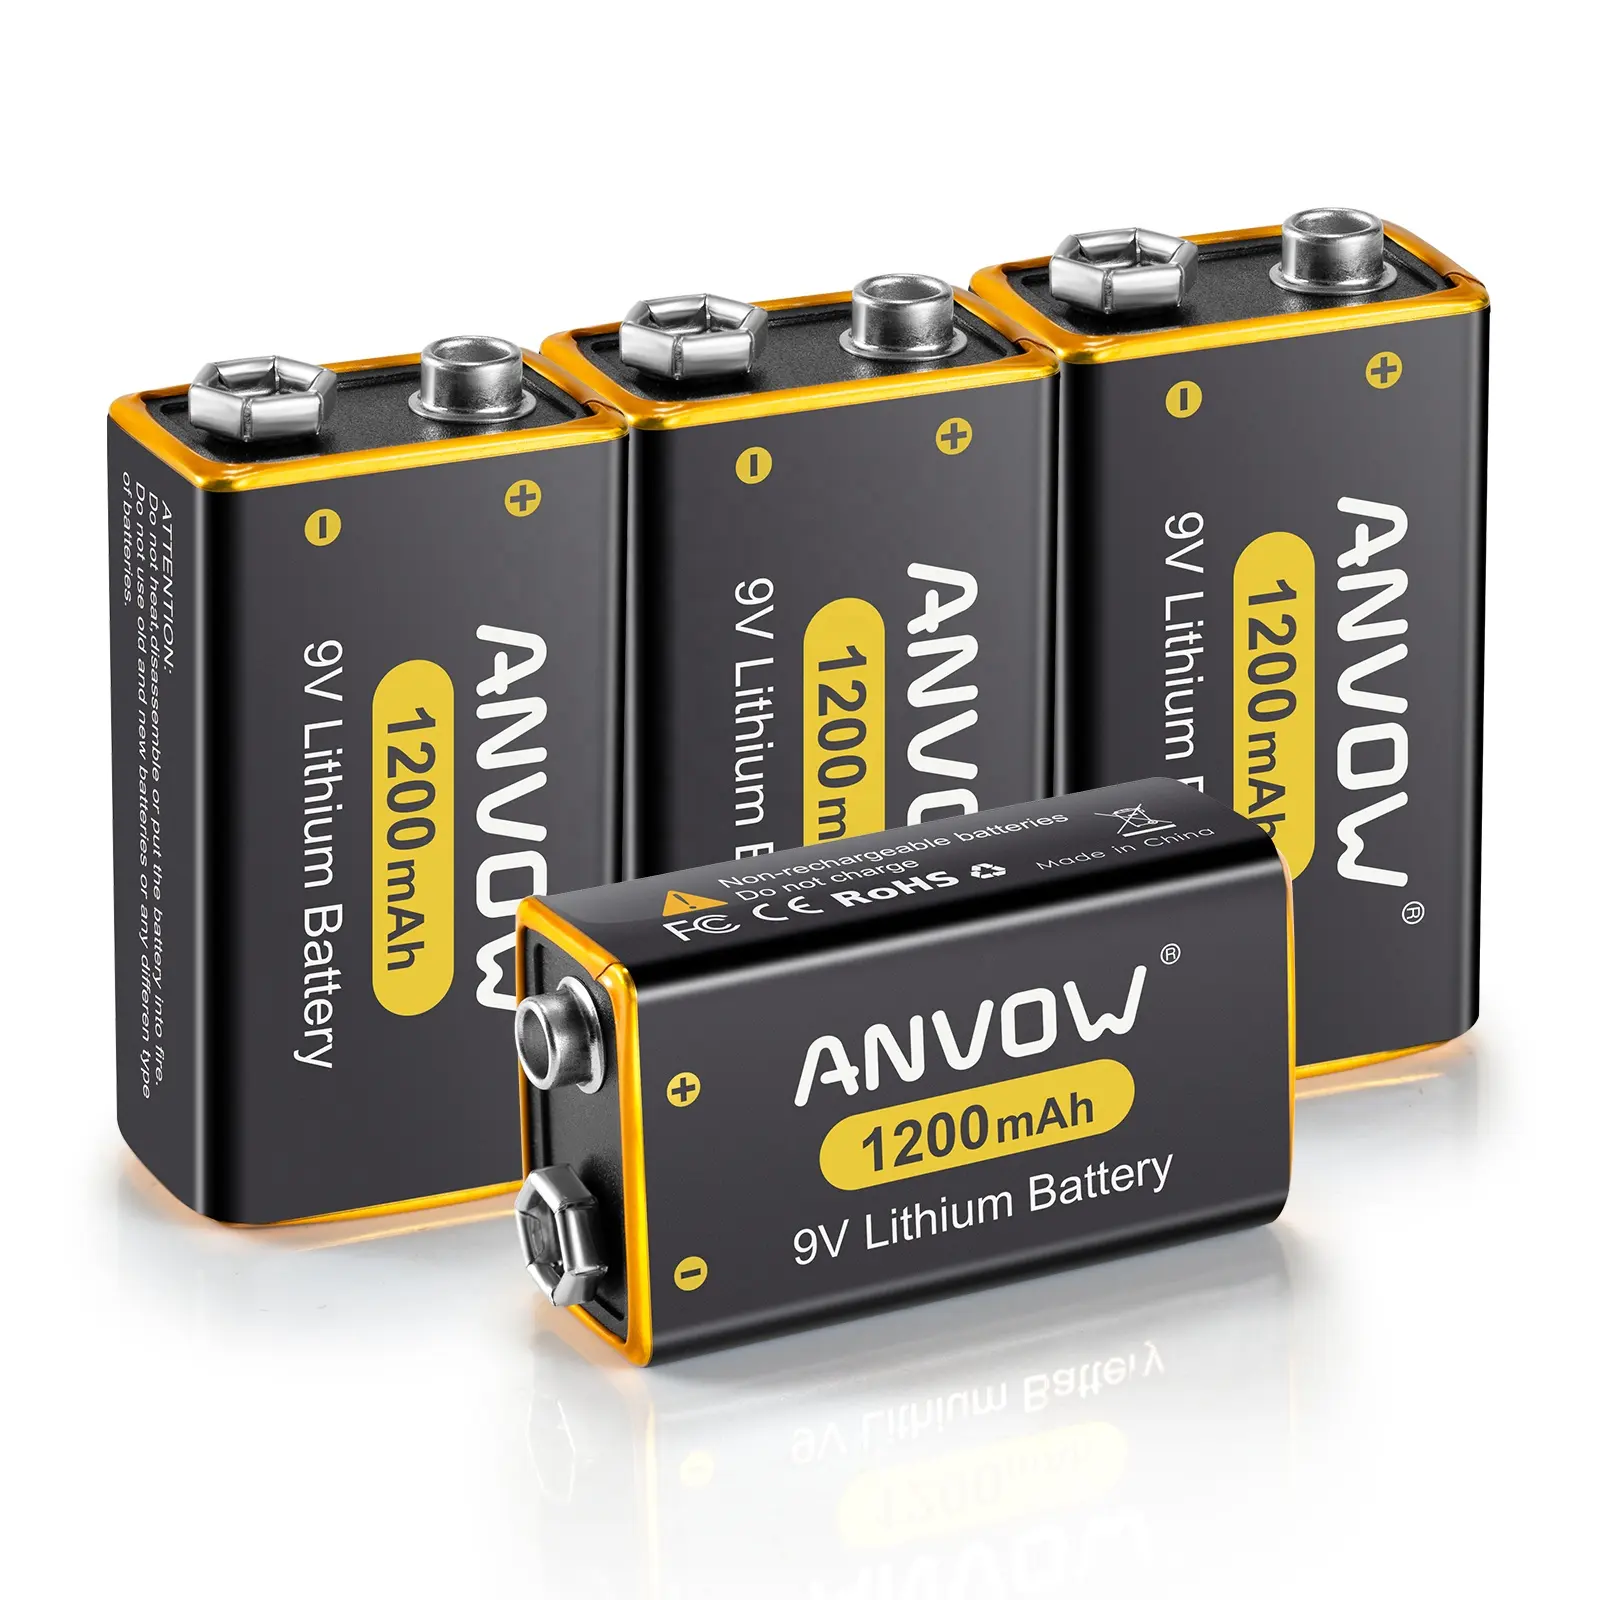 Bateria 1200mAh do íon de lítio do volume alto do OEM micro 9V não-bateria recarregável das baterias 9V para os aparelhos eletrodomésticos